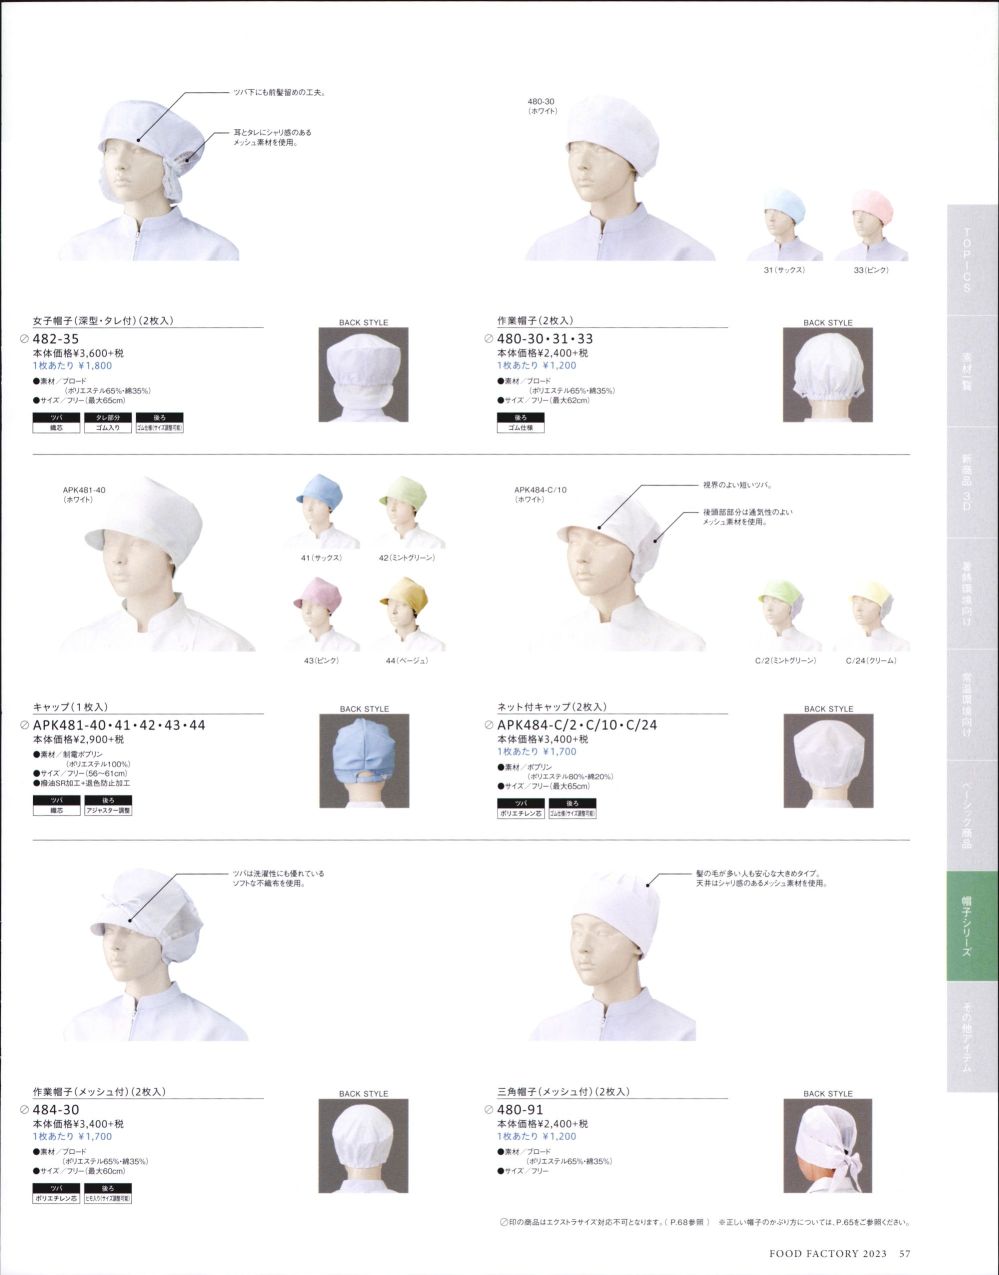 ユニフォーム1.COM 食品白衣jp 食品工場用 KAZEN カゼン フード 